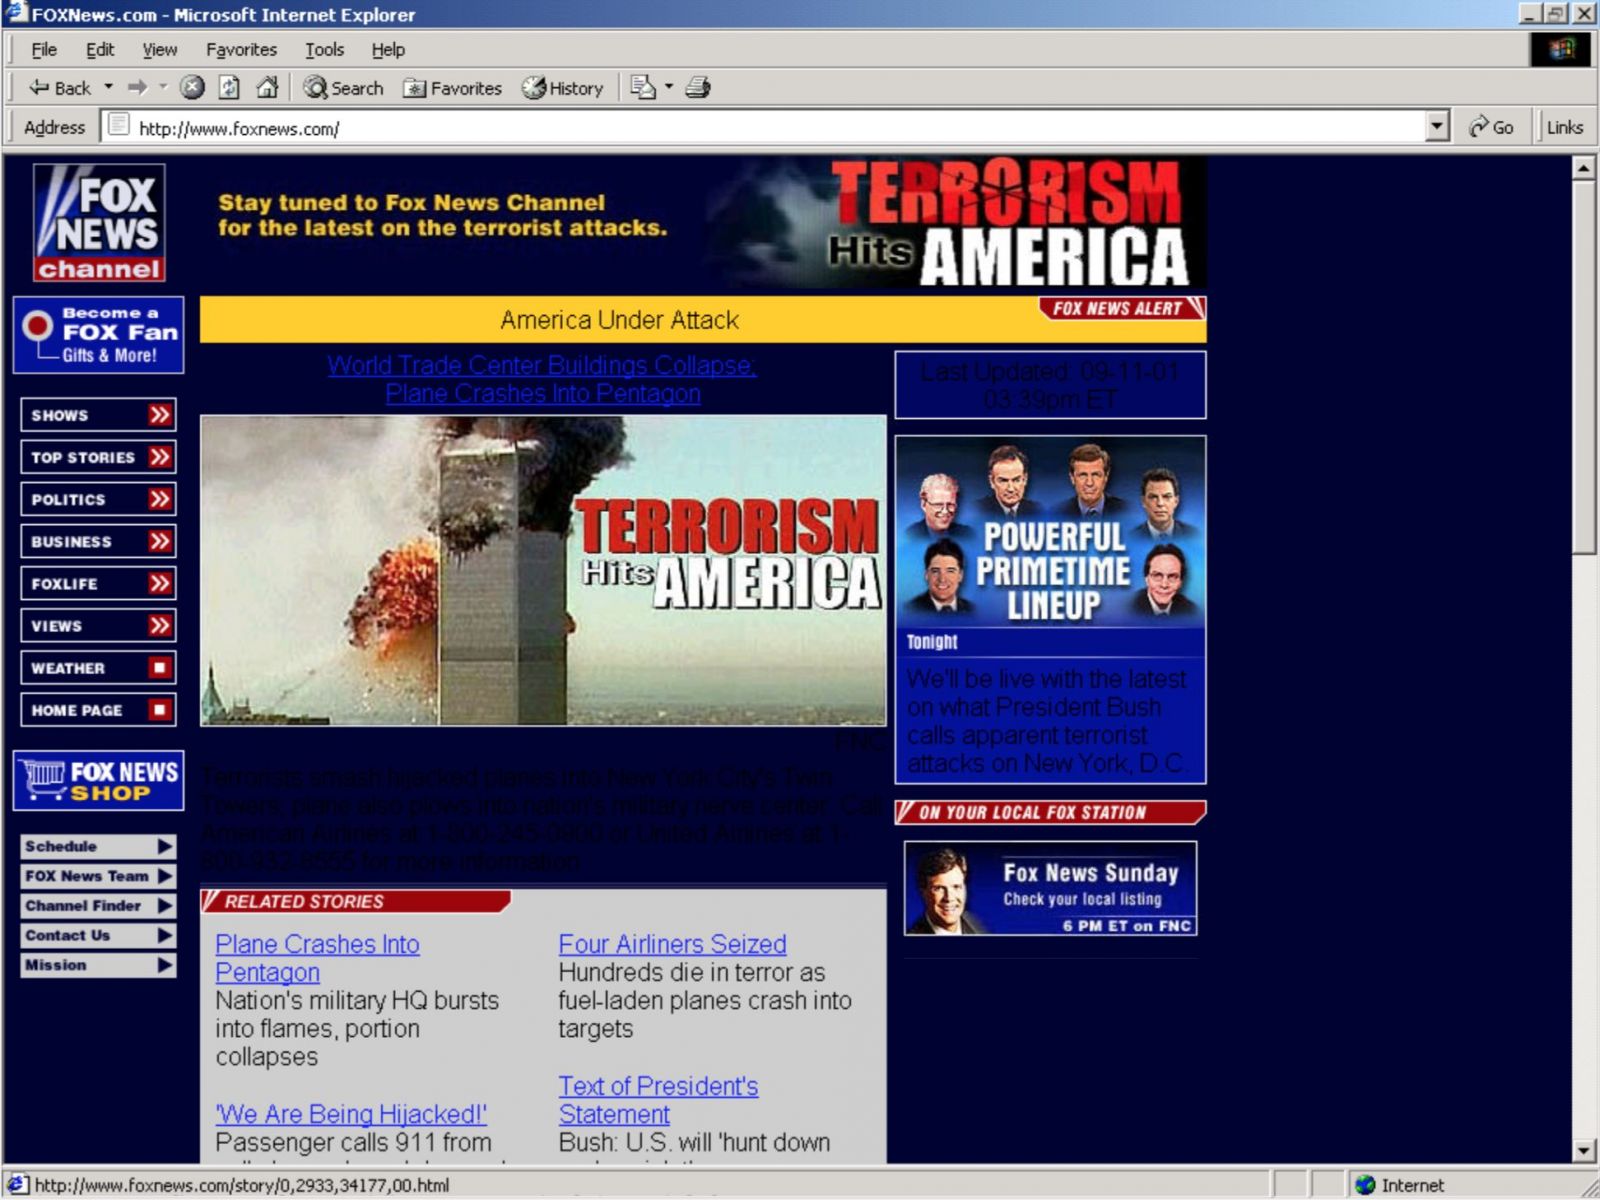 Přerušujeme vysílání. TV a přetížený internet informovali o útocích 11. září 2001 jen chvíli po tragédii, svět dodnes vzpomíná